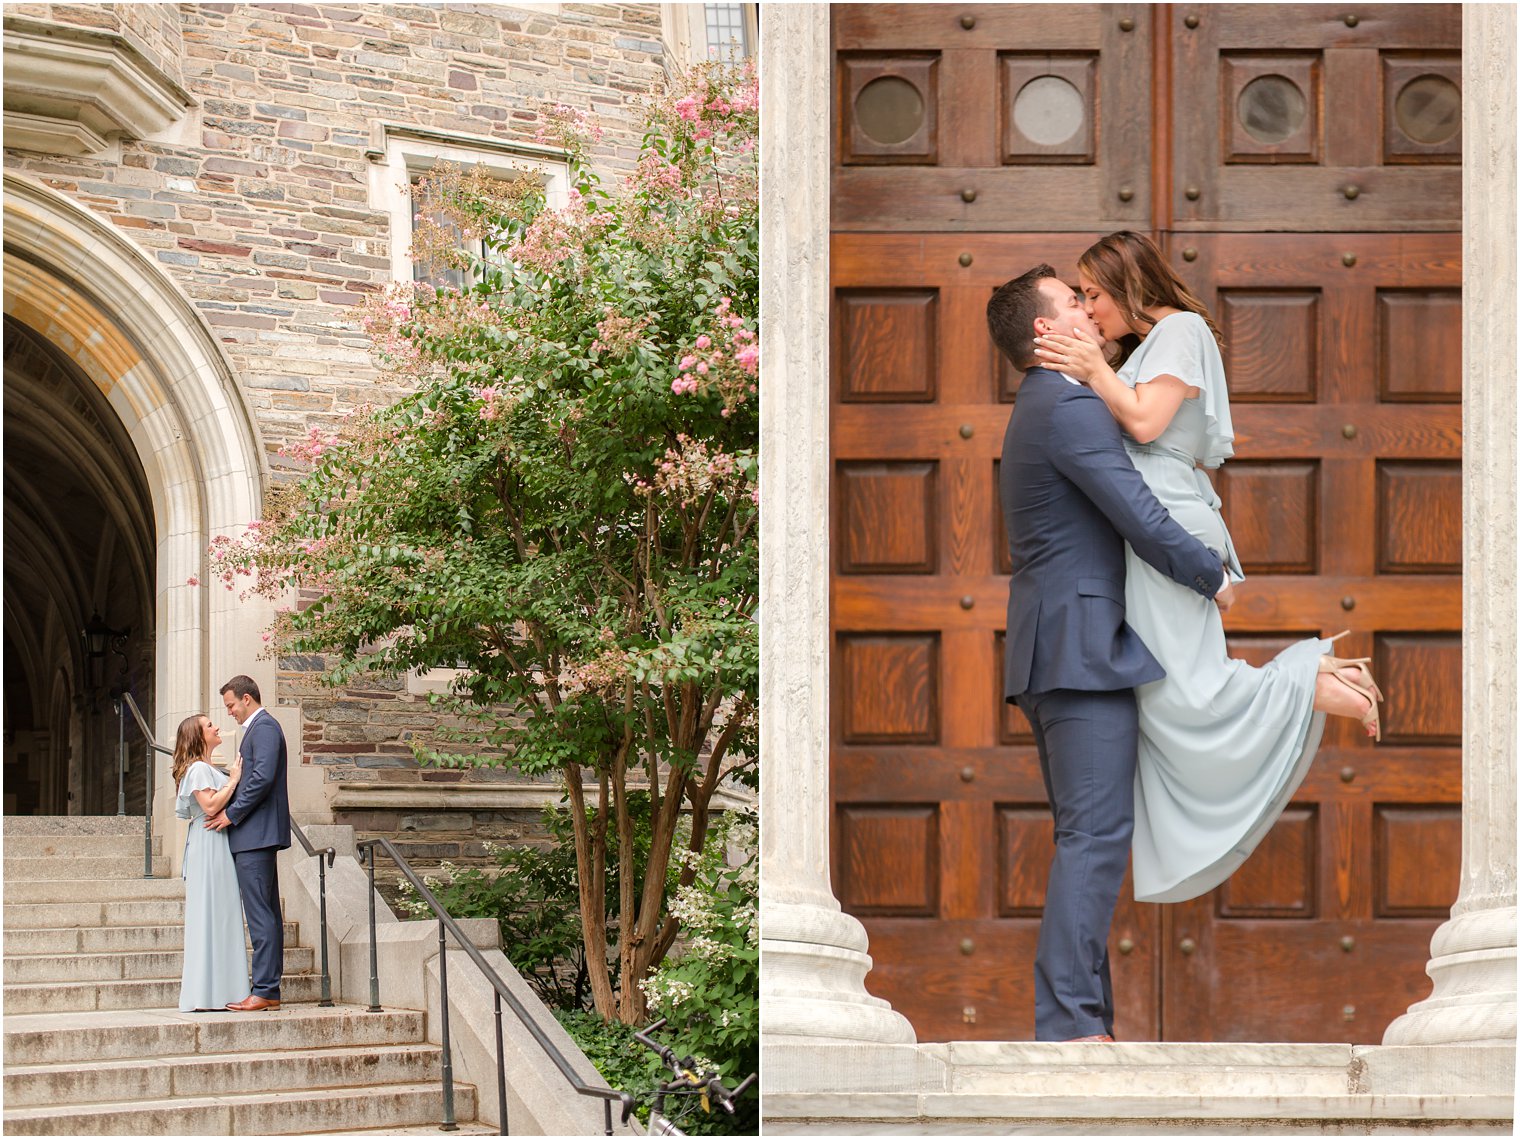 NJ wedding photographer Idalia Photography photographs Princeton University Engagement session